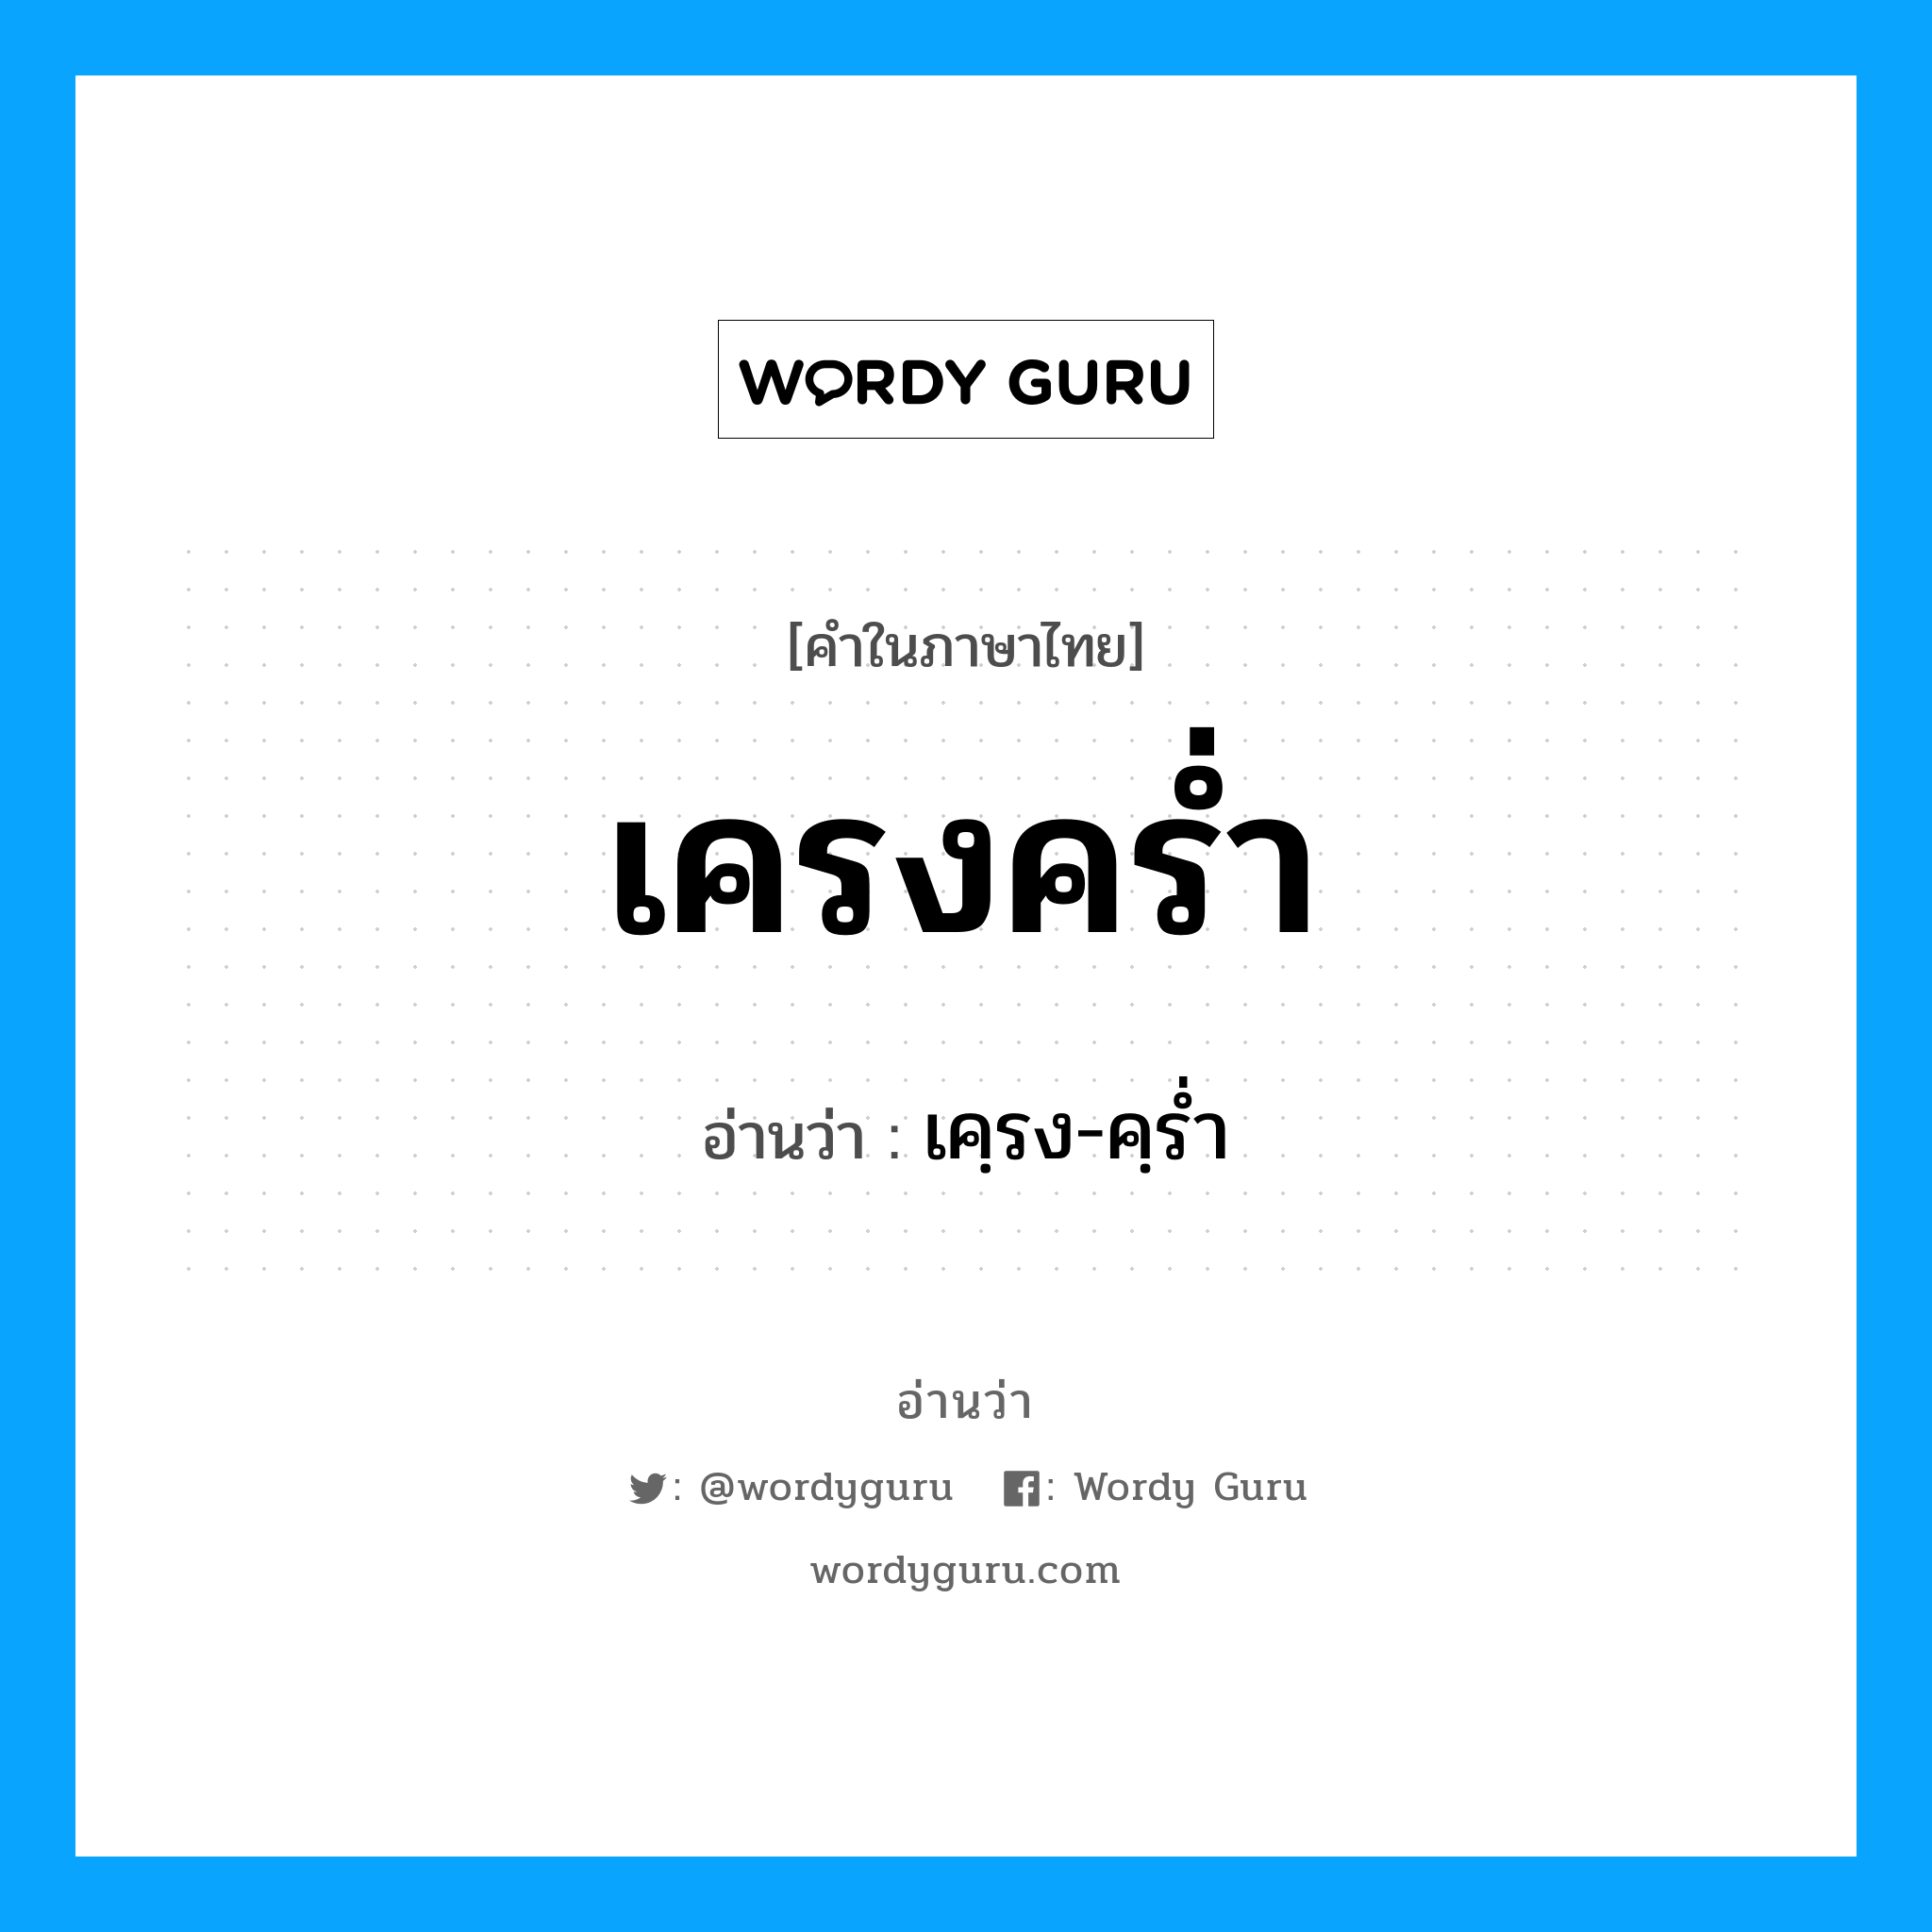 เคฺรง-คฺรํ่า เป็นคำอ่านของคำไหน?, คำในภาษาไทย เคฺรง-คฺรํ่า อ่านว่า เครงคร่ำ